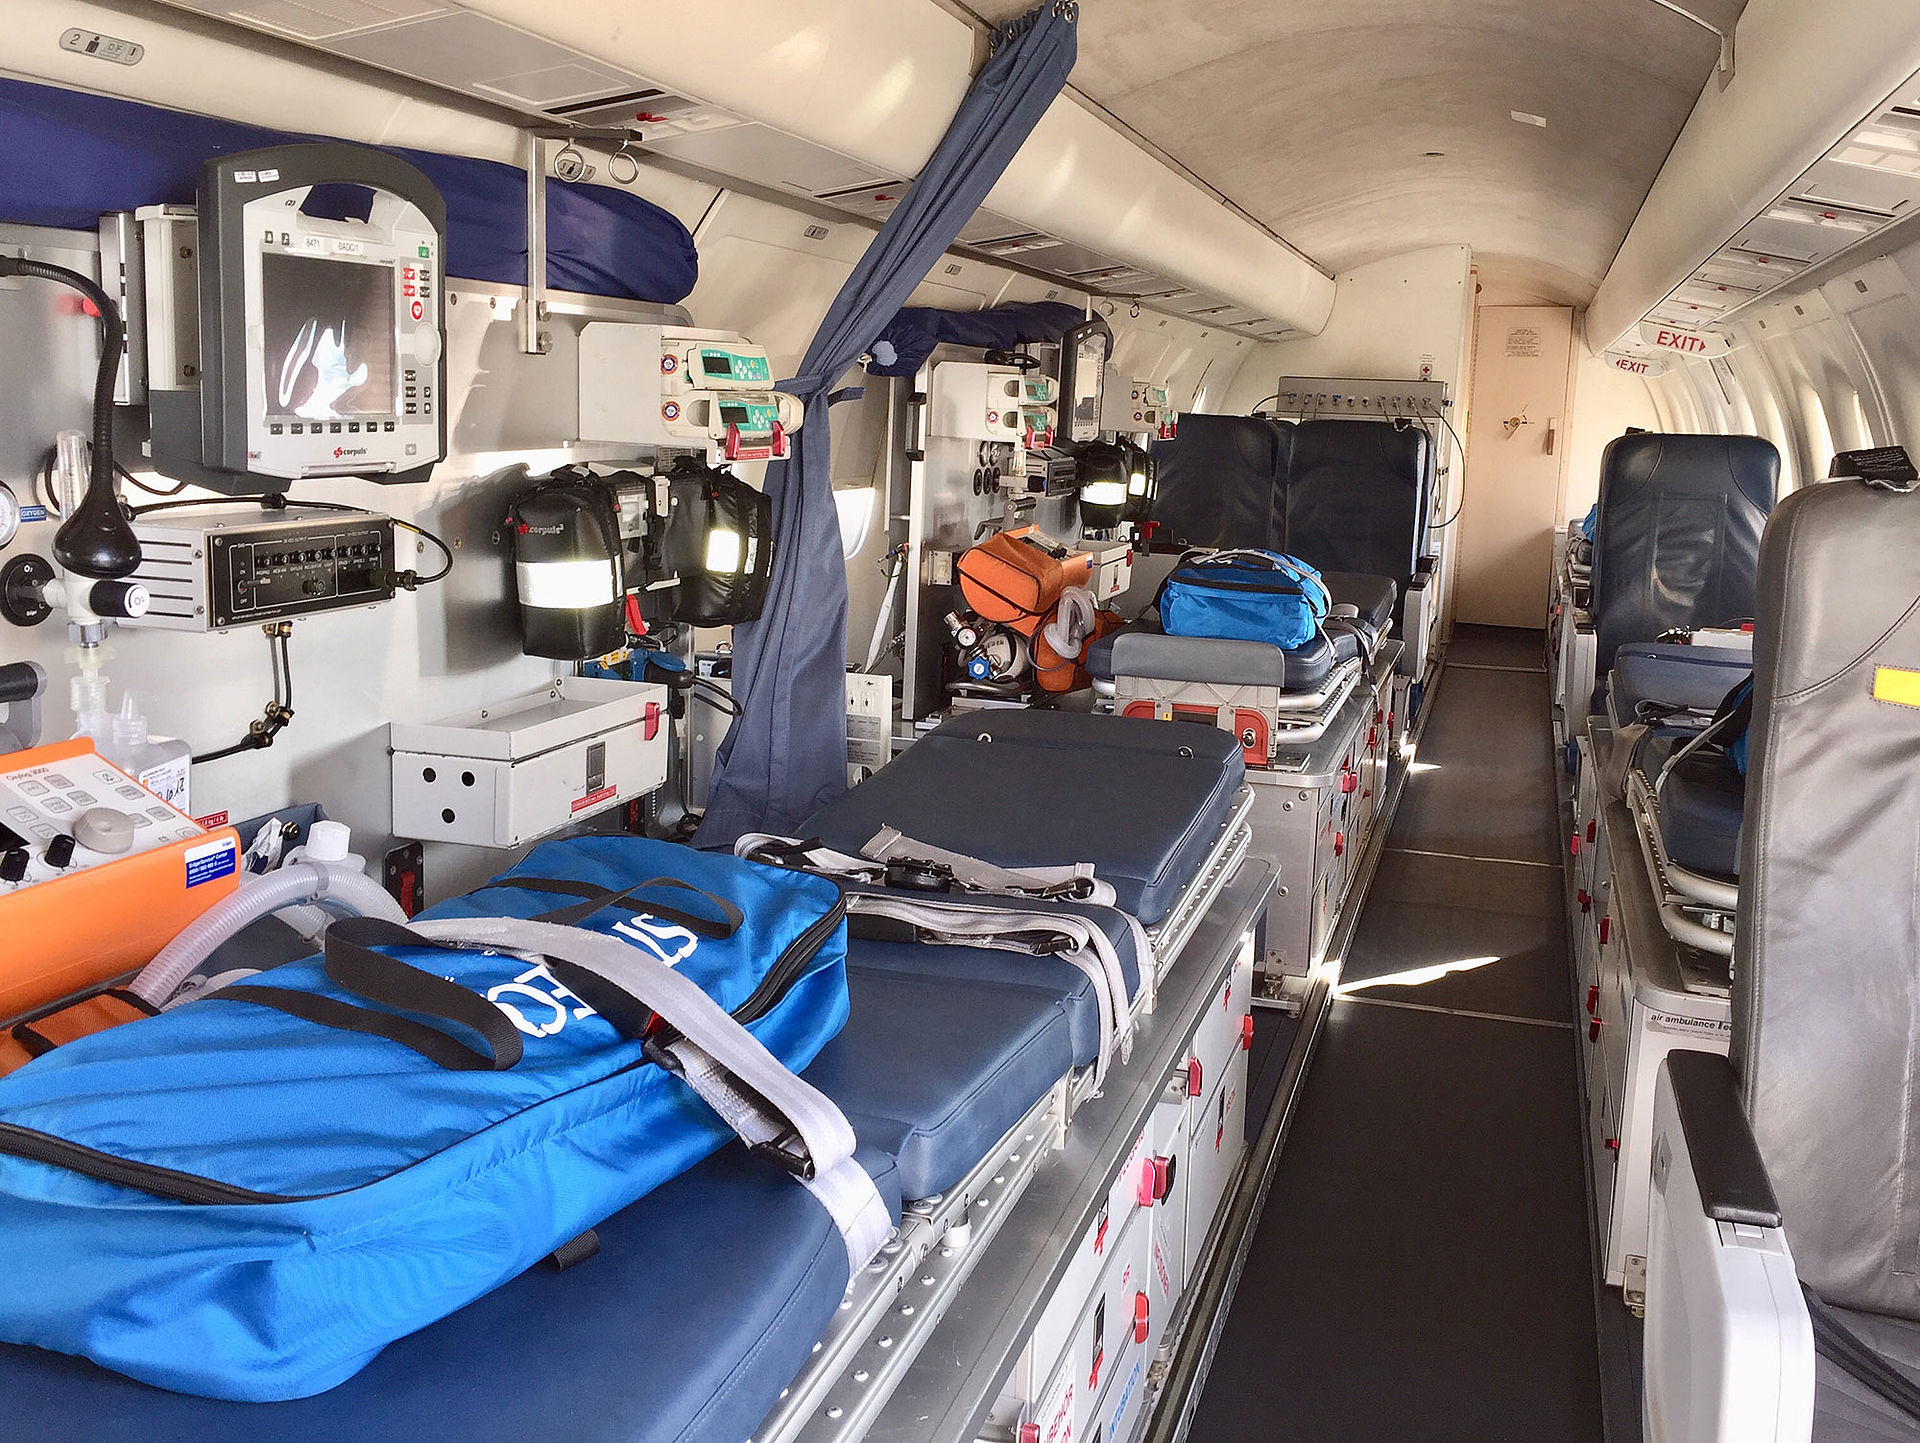 Aero-Dienst Air Ambulance Dorrnier 328Jet cabin